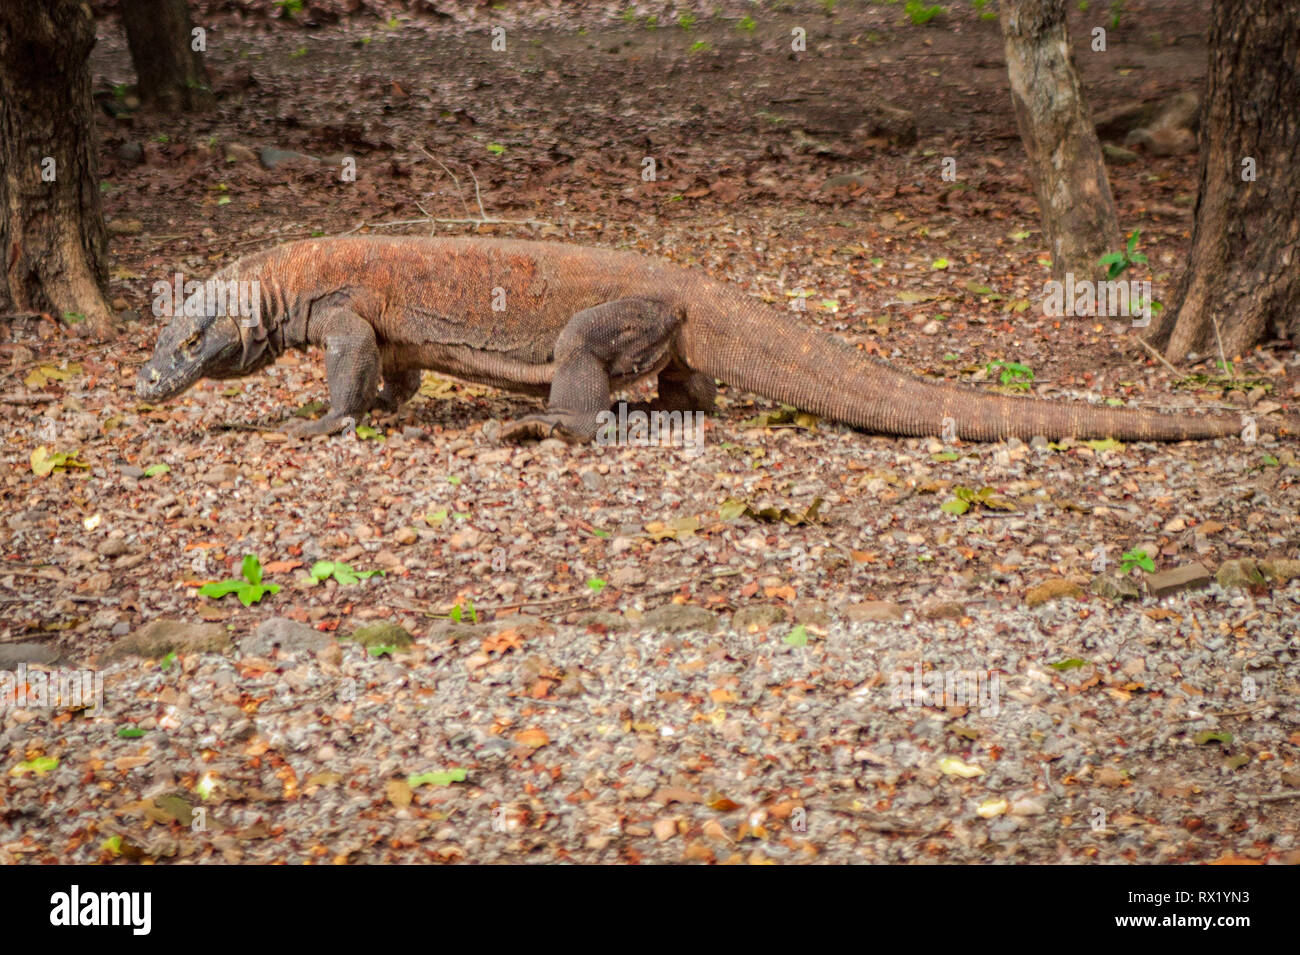 Der Komodo Drachen, auch als die Komodo Monitor genannt, ist eine Pflanzenart aus der Gattung der Eidechse in der Indonesischen Inseln Komodo und Rinca gefunden. Sie sind gefährlich. Stockfoto